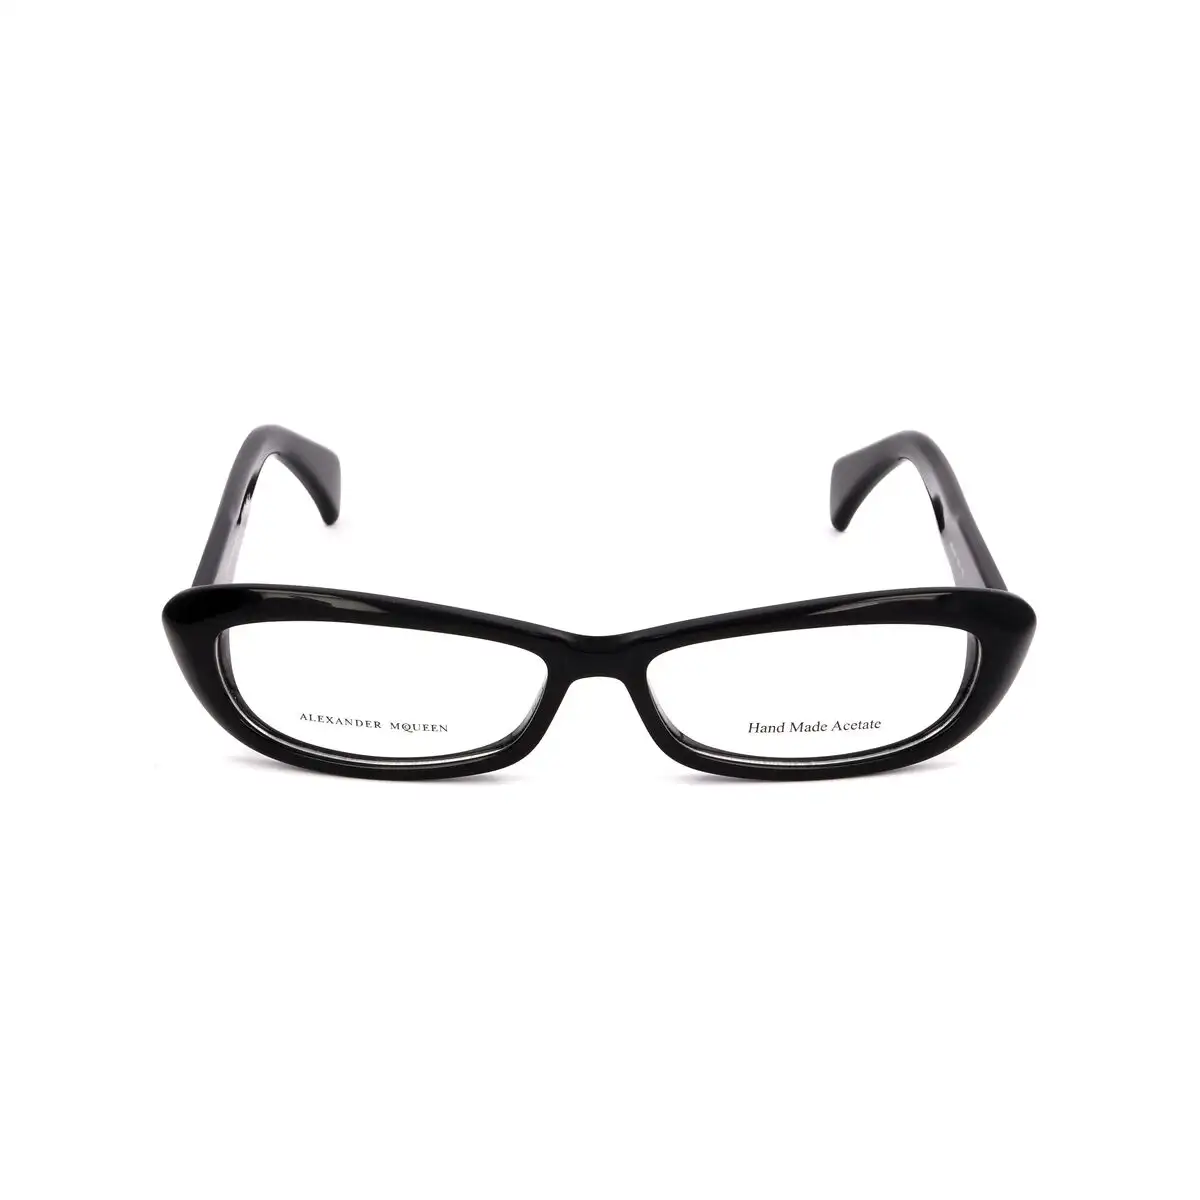 Monture de lunettes femme alexander mcqueen amq 4181 807 noir_9315. Bienvenue sur DIAYTAR SENEGAL - Où le Shopping est une Affaire Personnelle. Découvrez notre sélection et choisissez des produits qui reflètent votre unicité et votre individualité.